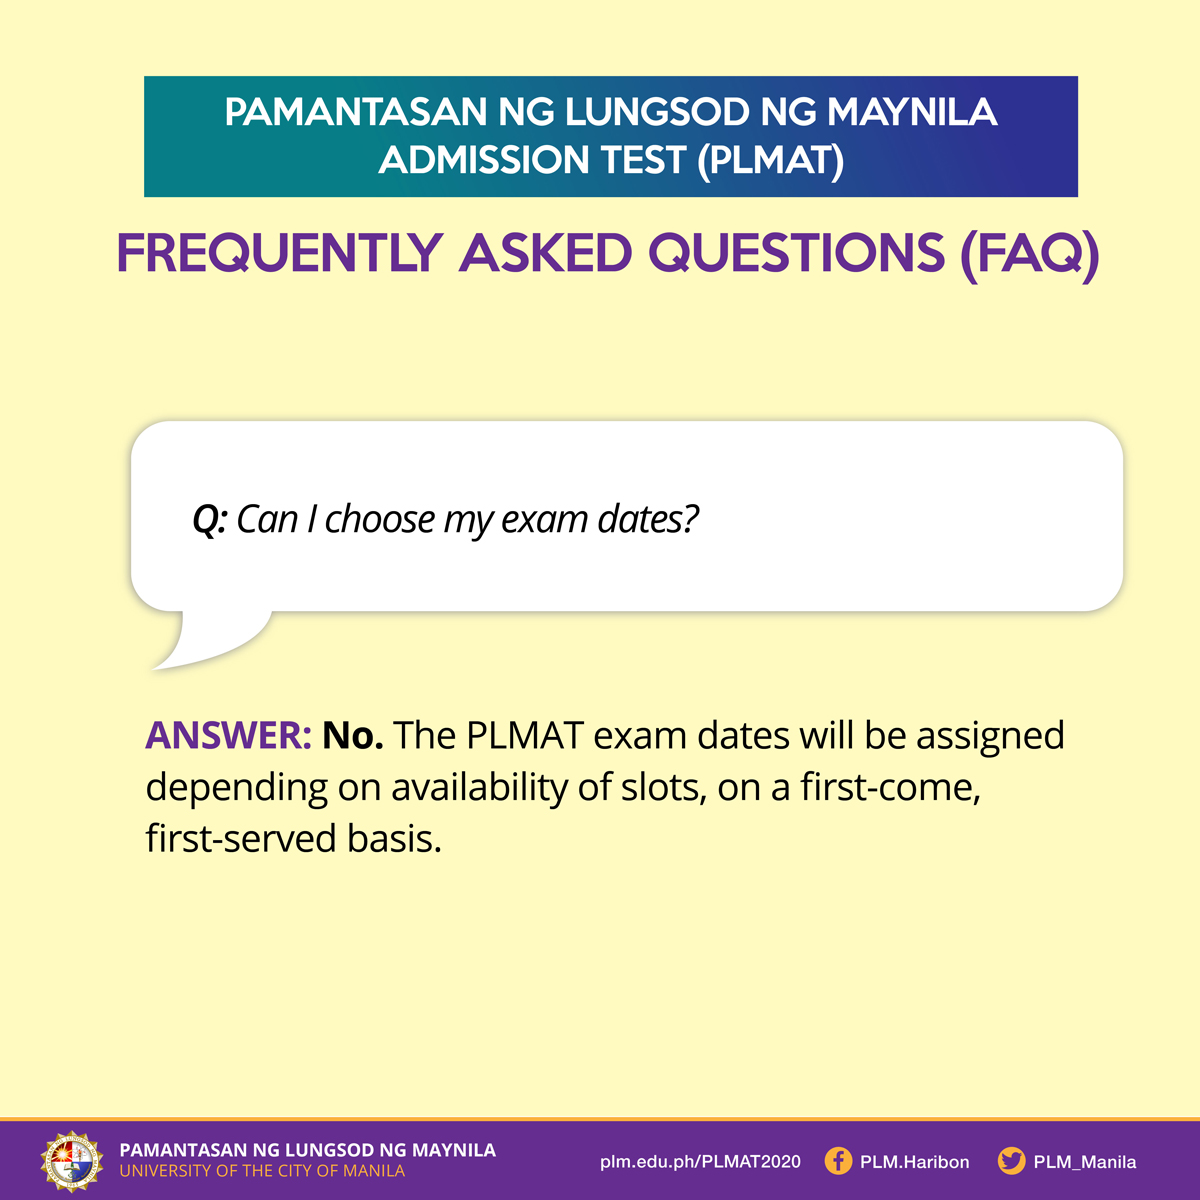 PLMAT FAQ 4: Choosing exam dates